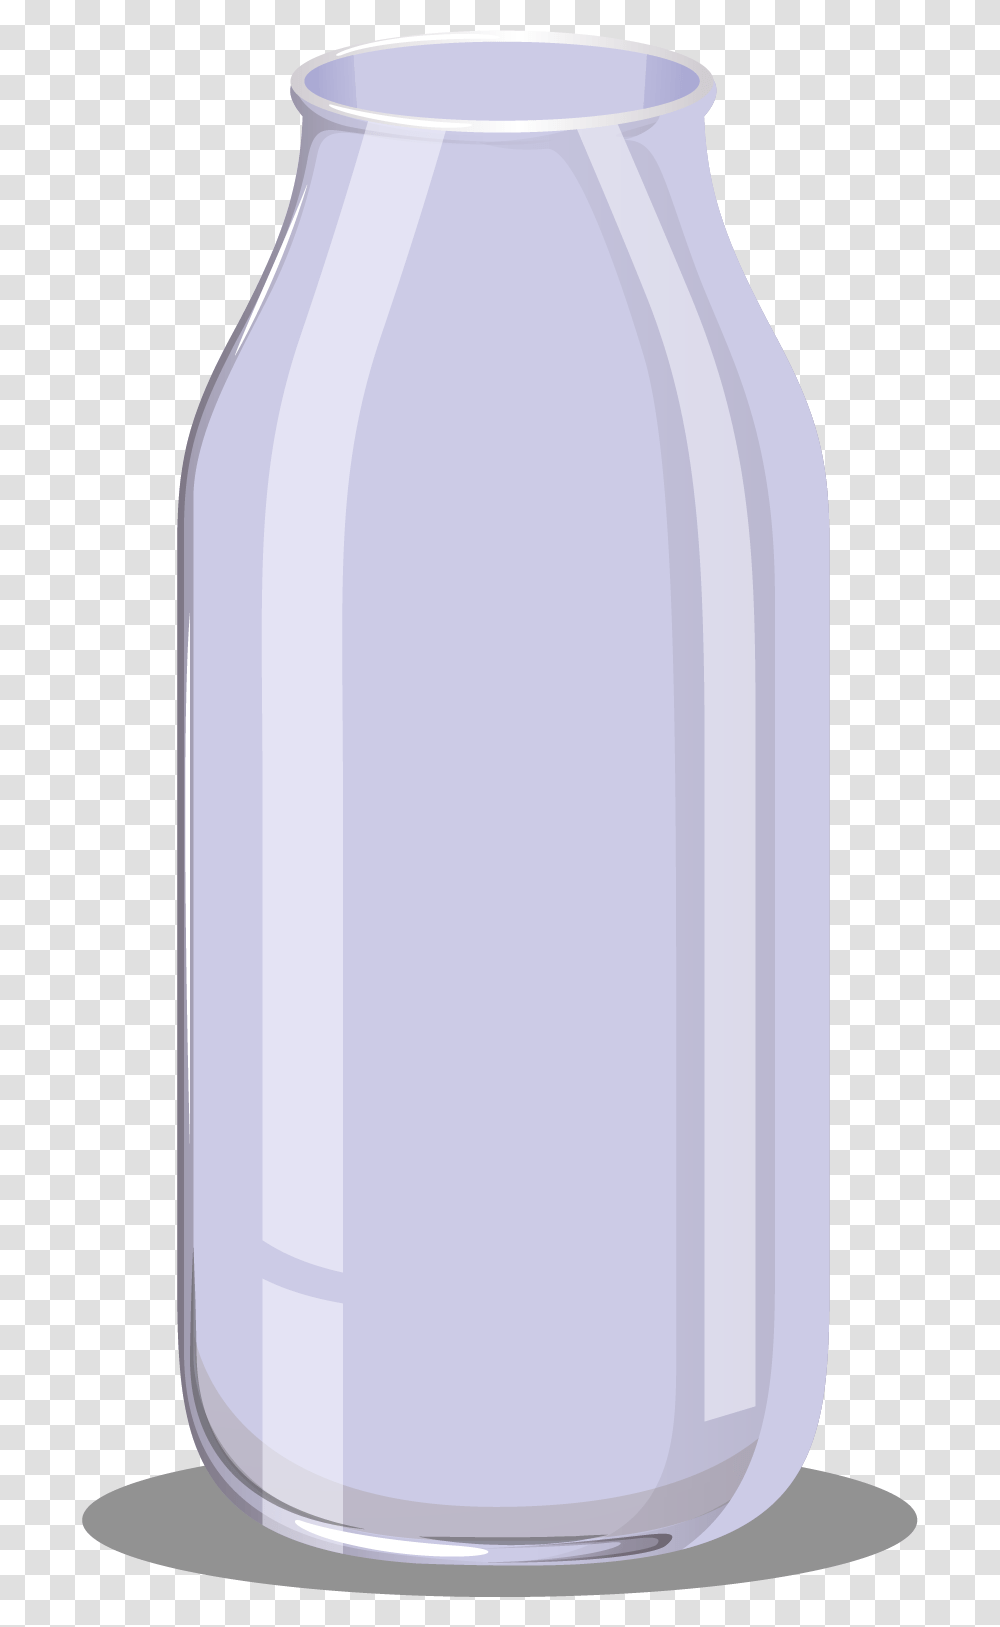 Glass Bottle, Beverage, Pop Bottle, Alcohol, Wine Bottle Transparent Png